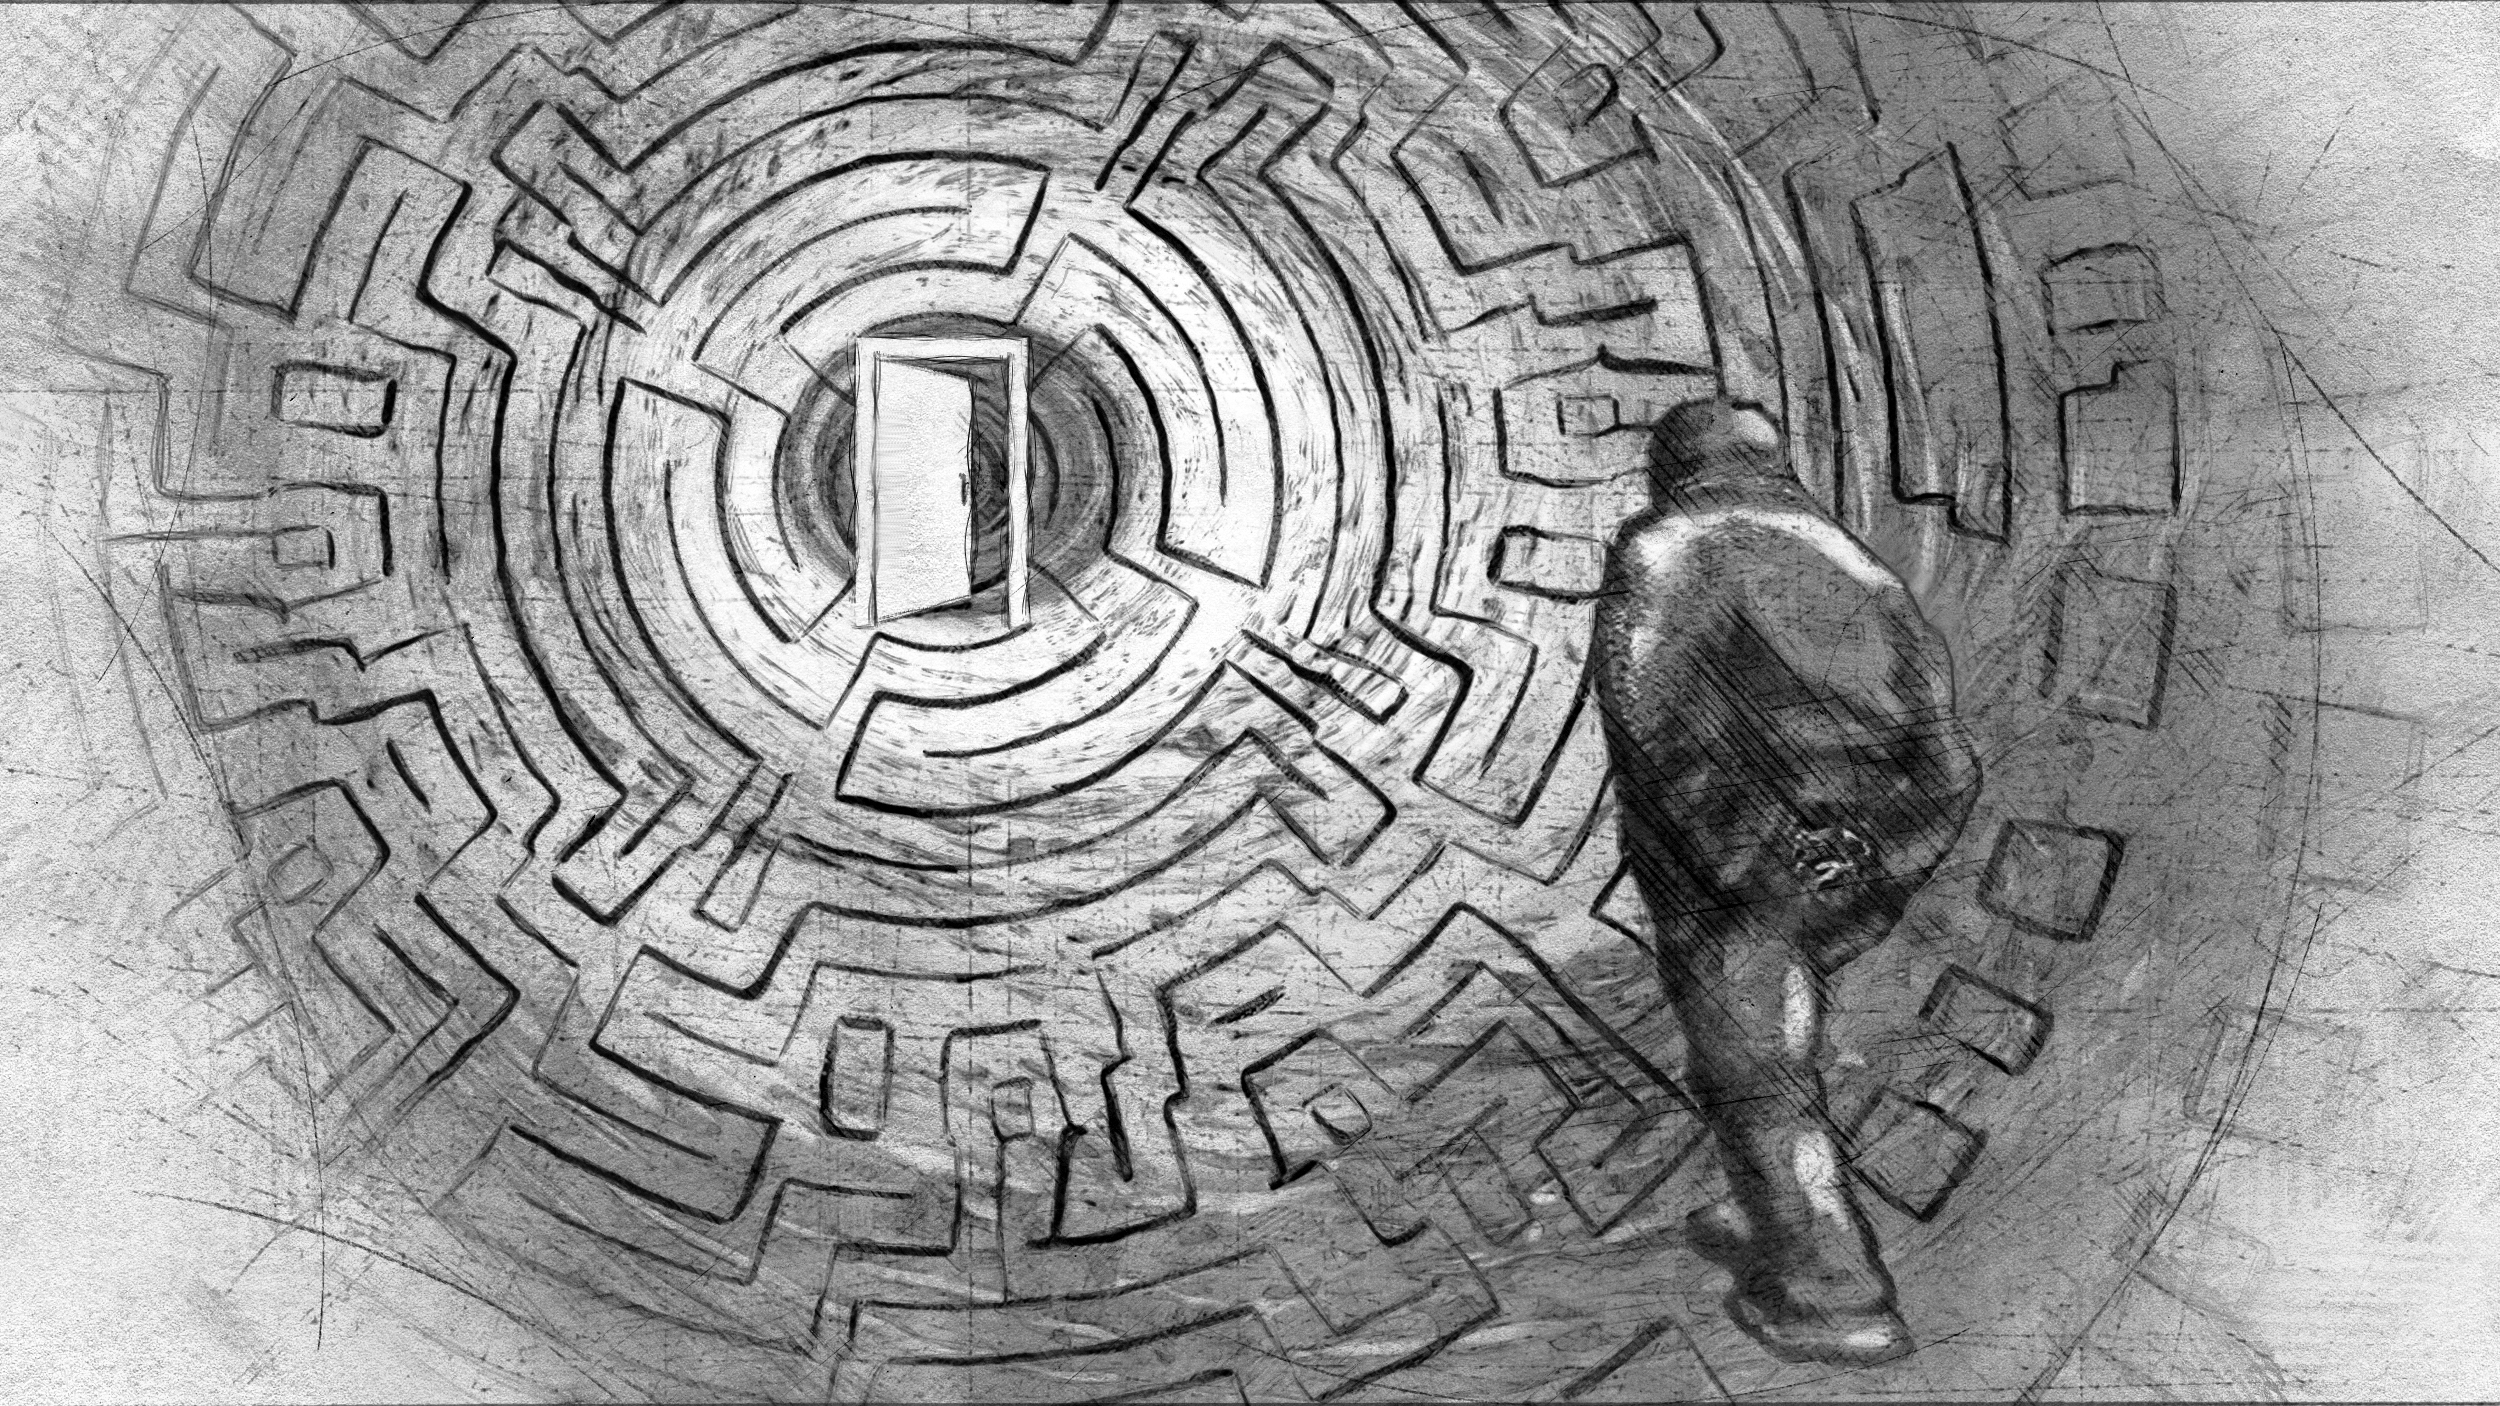 Prizonierul propriului labirintprecum